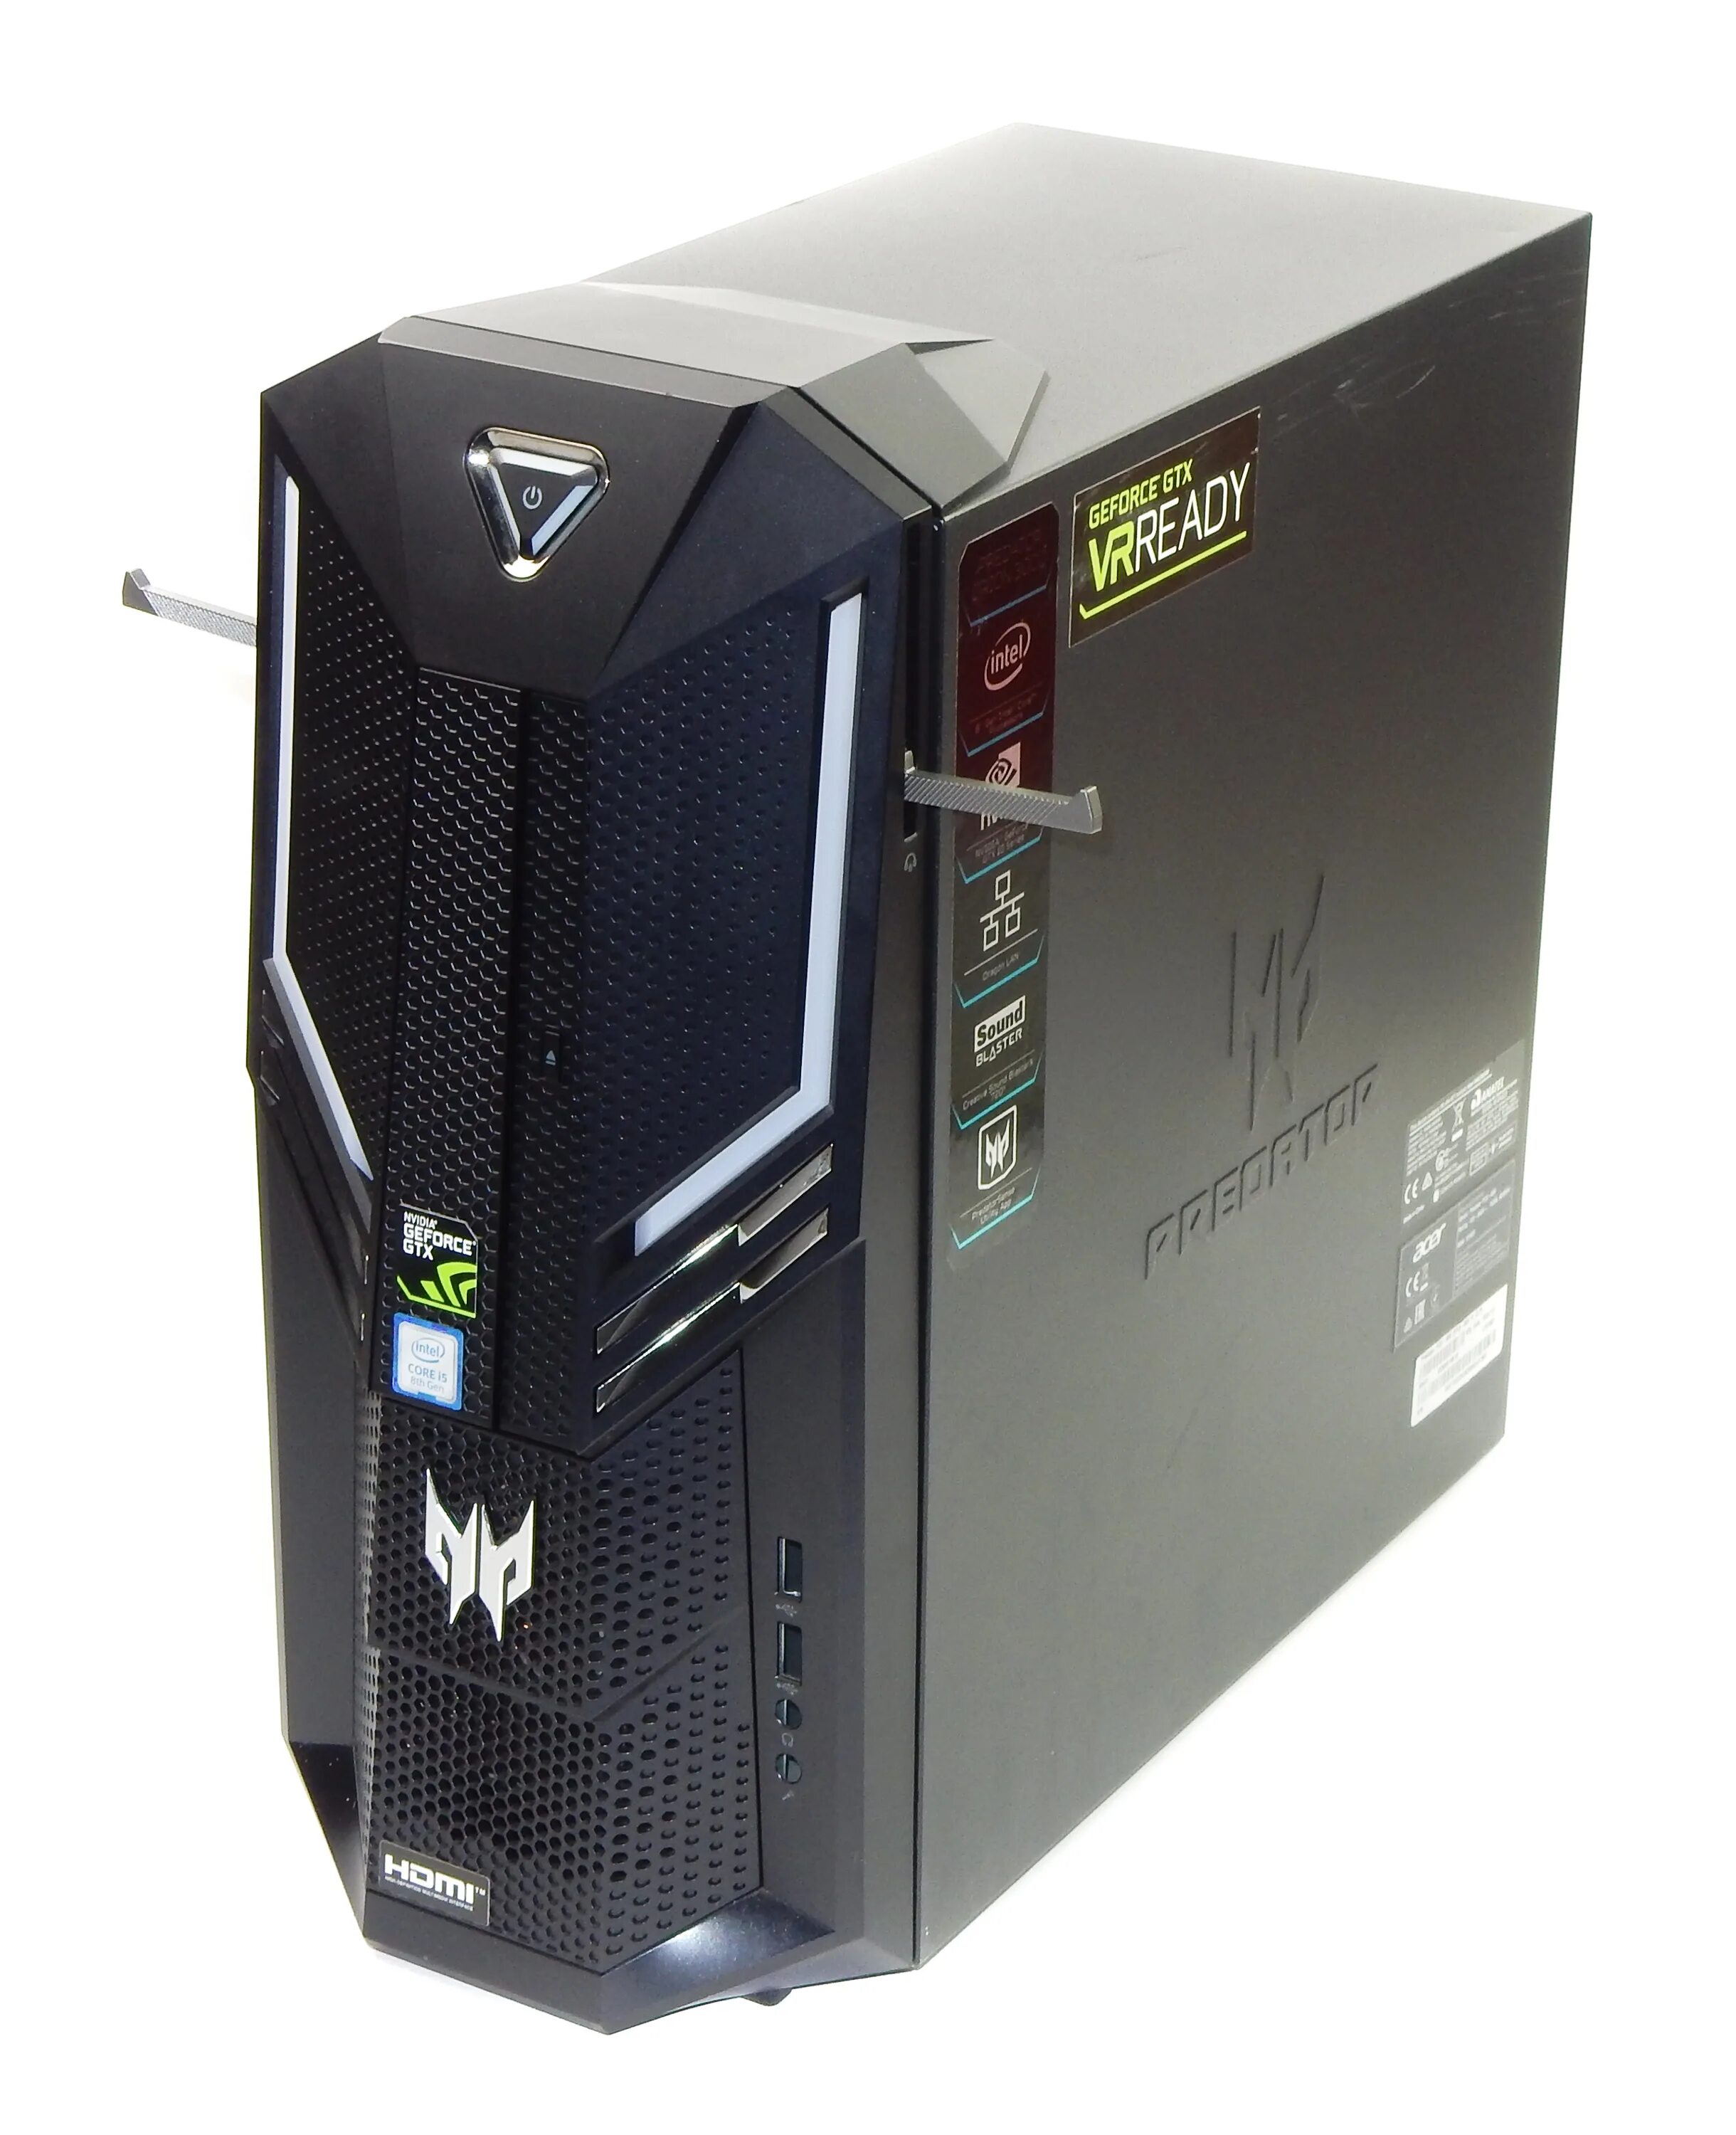 Acer Predator i5 системный блок. ПК Acer Predator po3-630. Системный блок Acer po3-630. Кейс предатор 3.